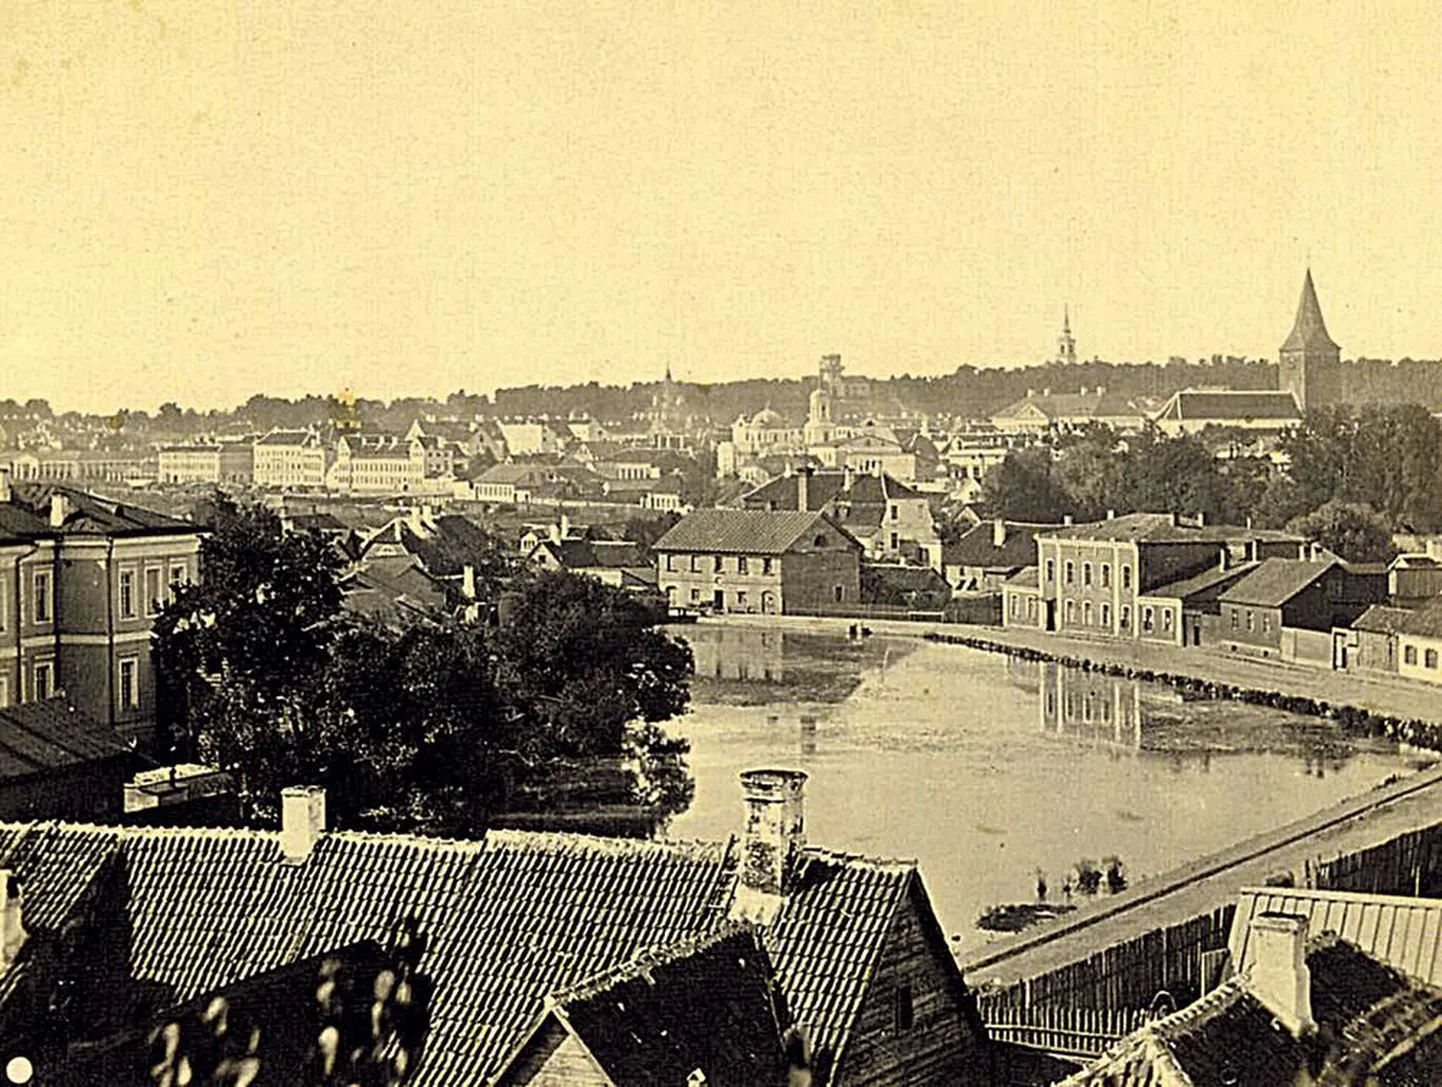 Meltsiveski vaade 1900. aasta paiku. Ees vasakul tiigi kaldal veterinaarinstituudi hooned (suured kivihooned). Kauguses Jaani kirik (paremal) ja veel kaugemal Maarja kiriku torn.